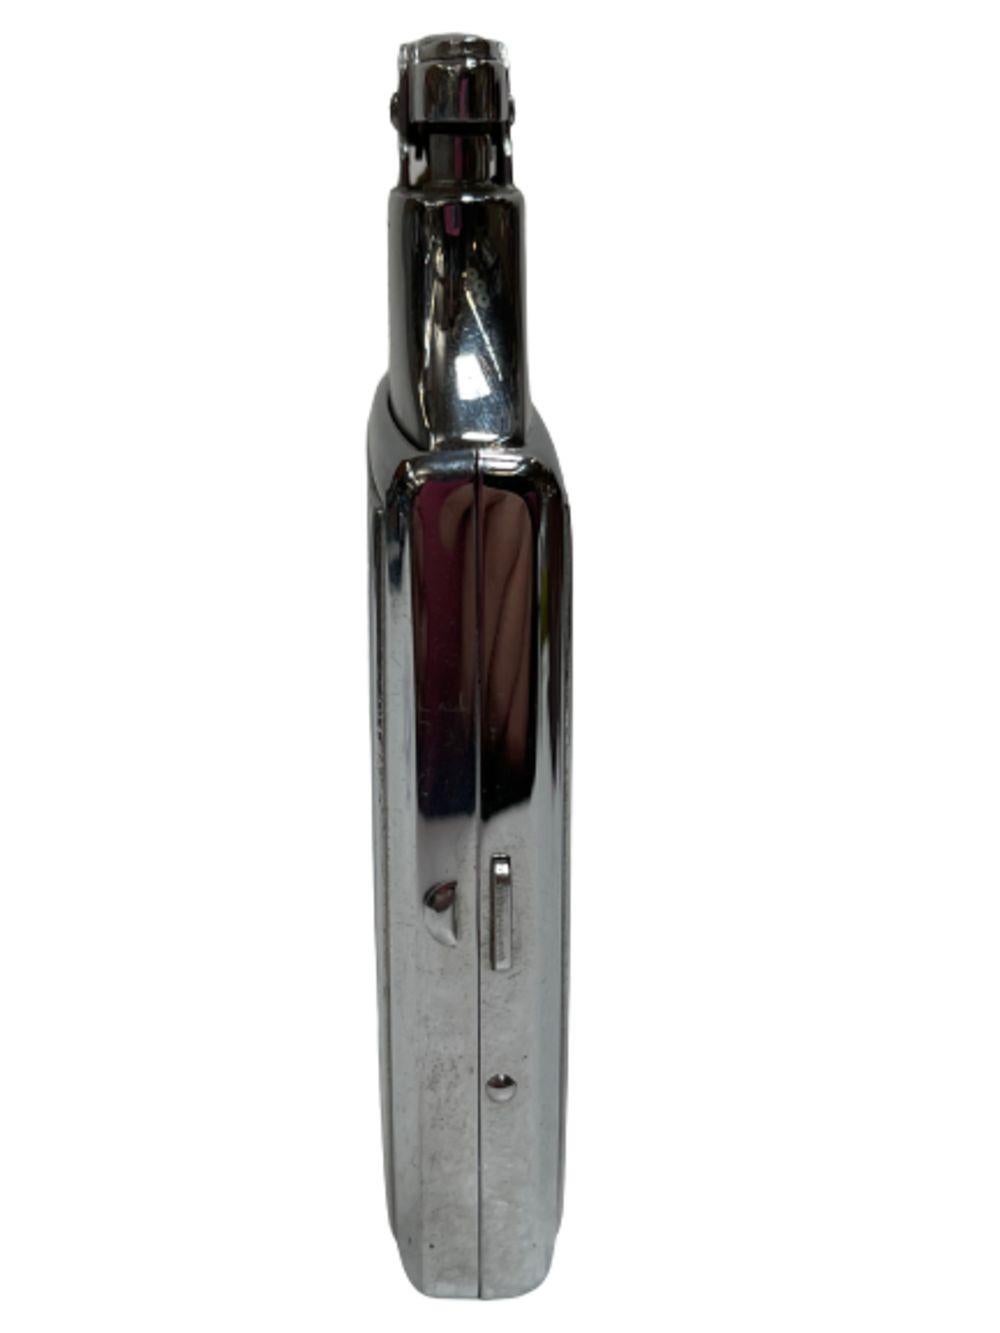 Mid-20th Century Art Deco Ronson Mastercase Cigarette Lighter Case Combo With Original Box For Sale